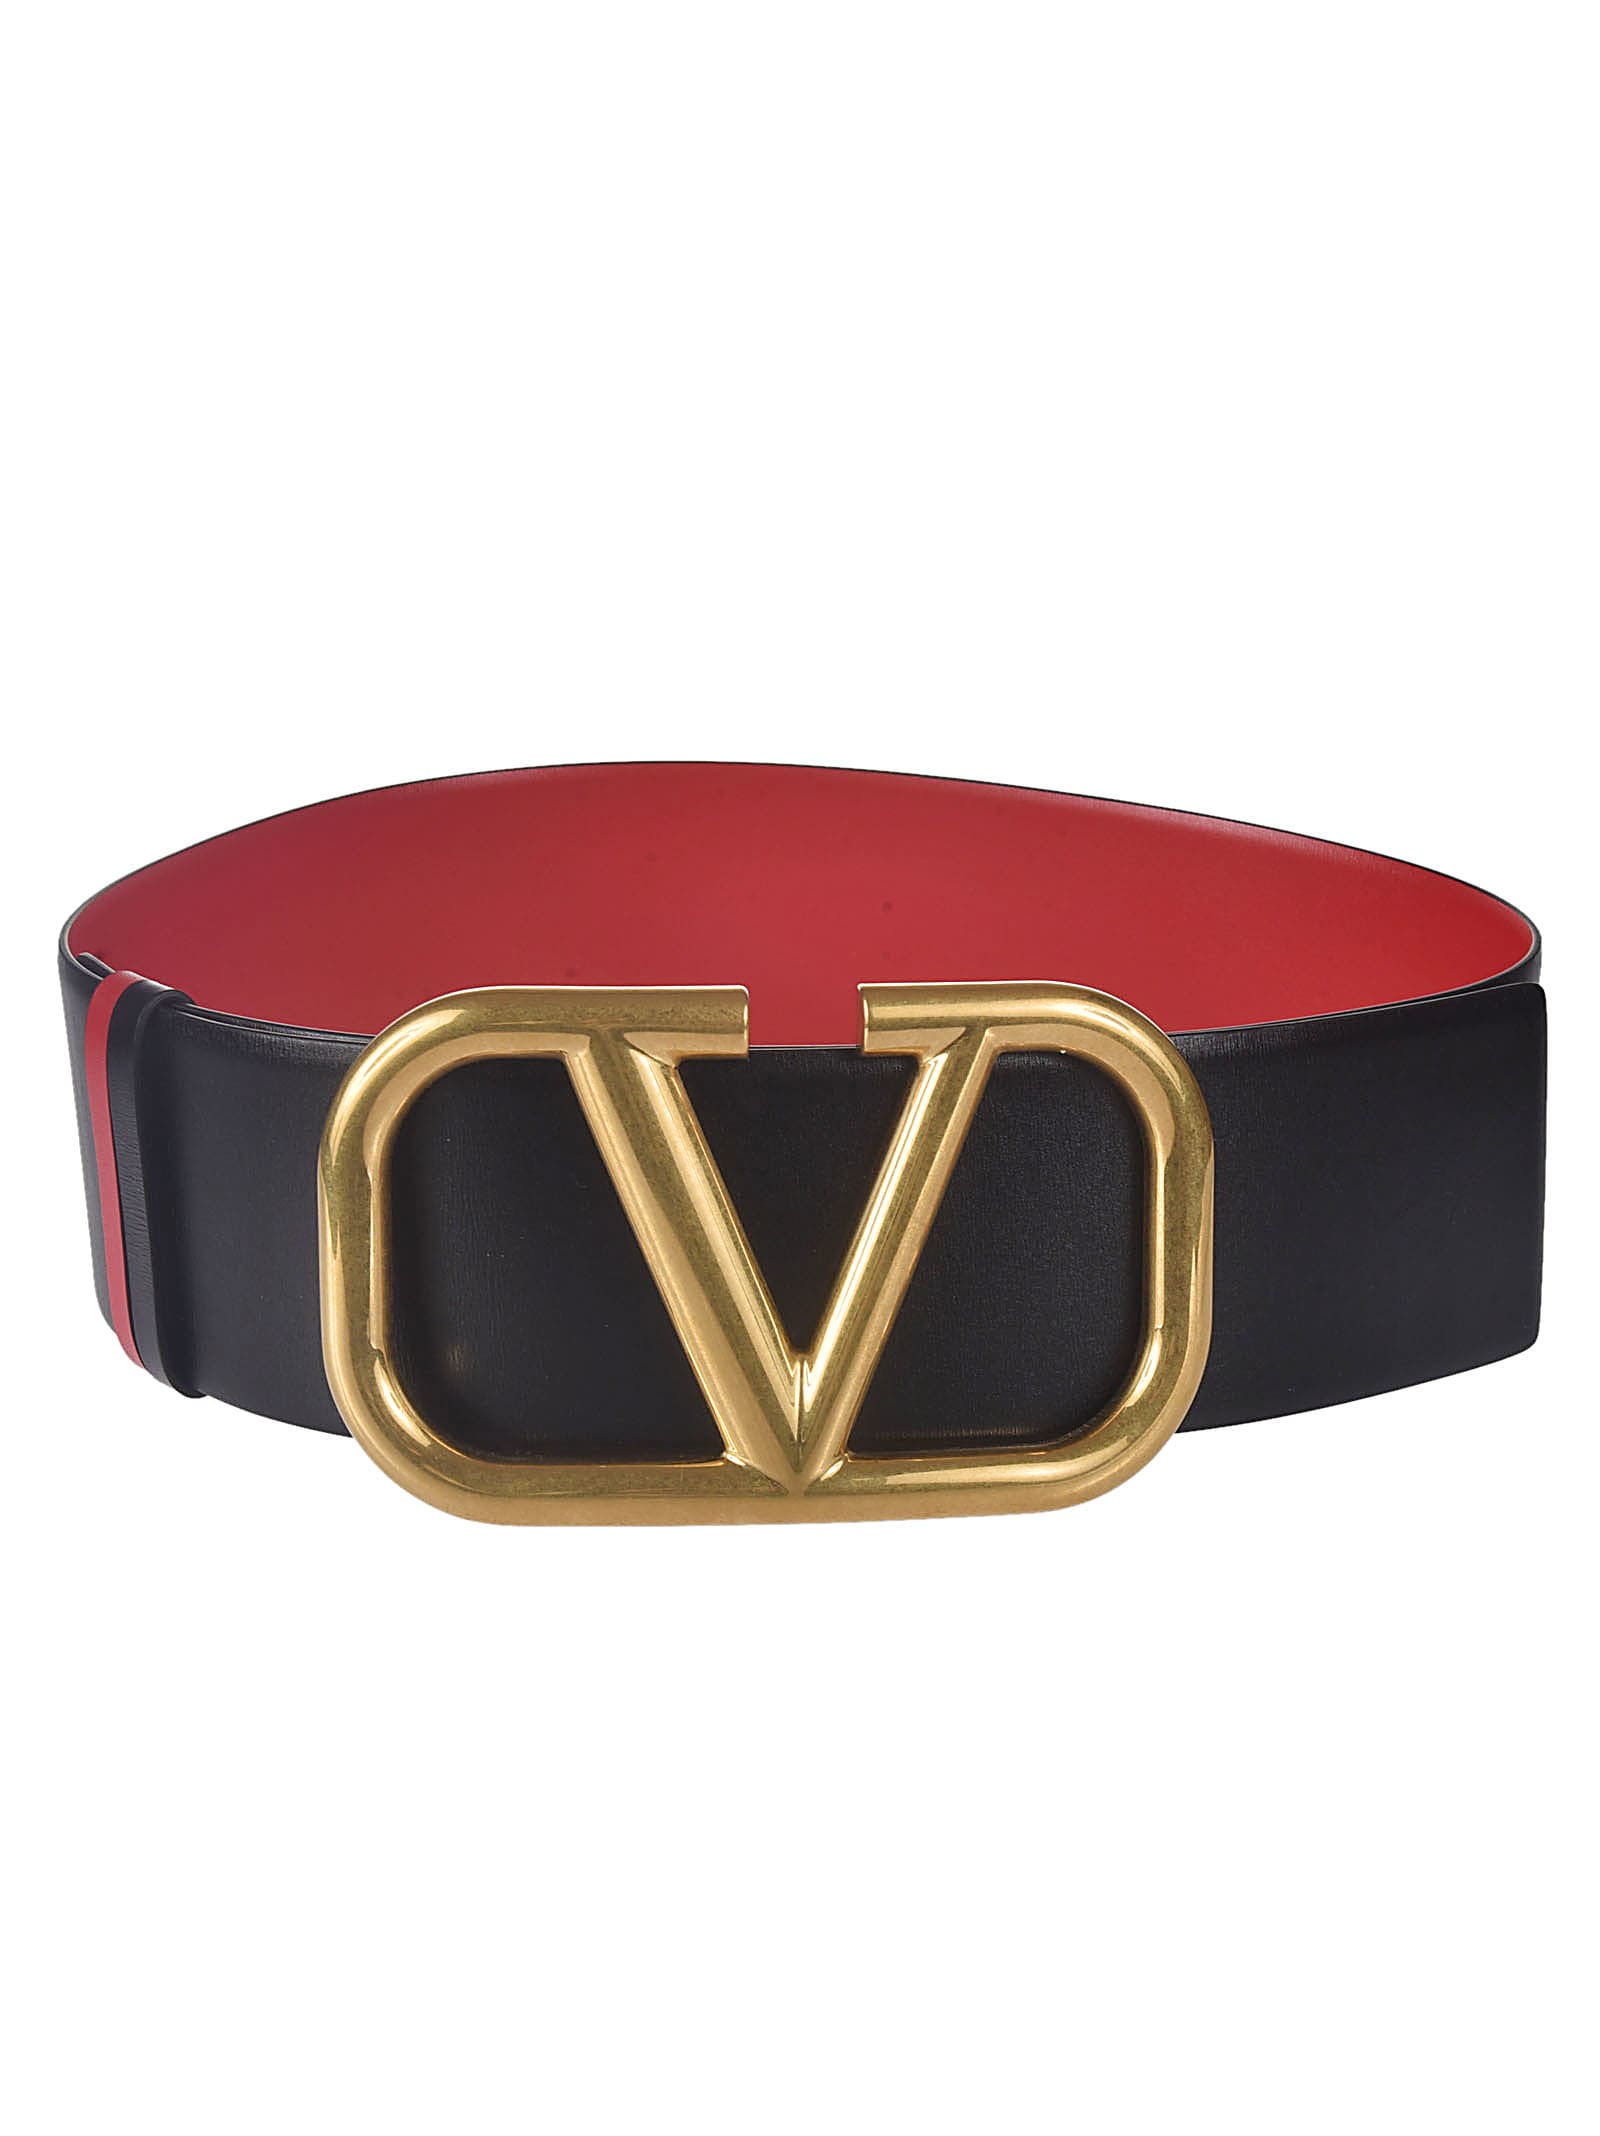 Valentino Garavani V Logo Buckle Belt In Nero/rosso